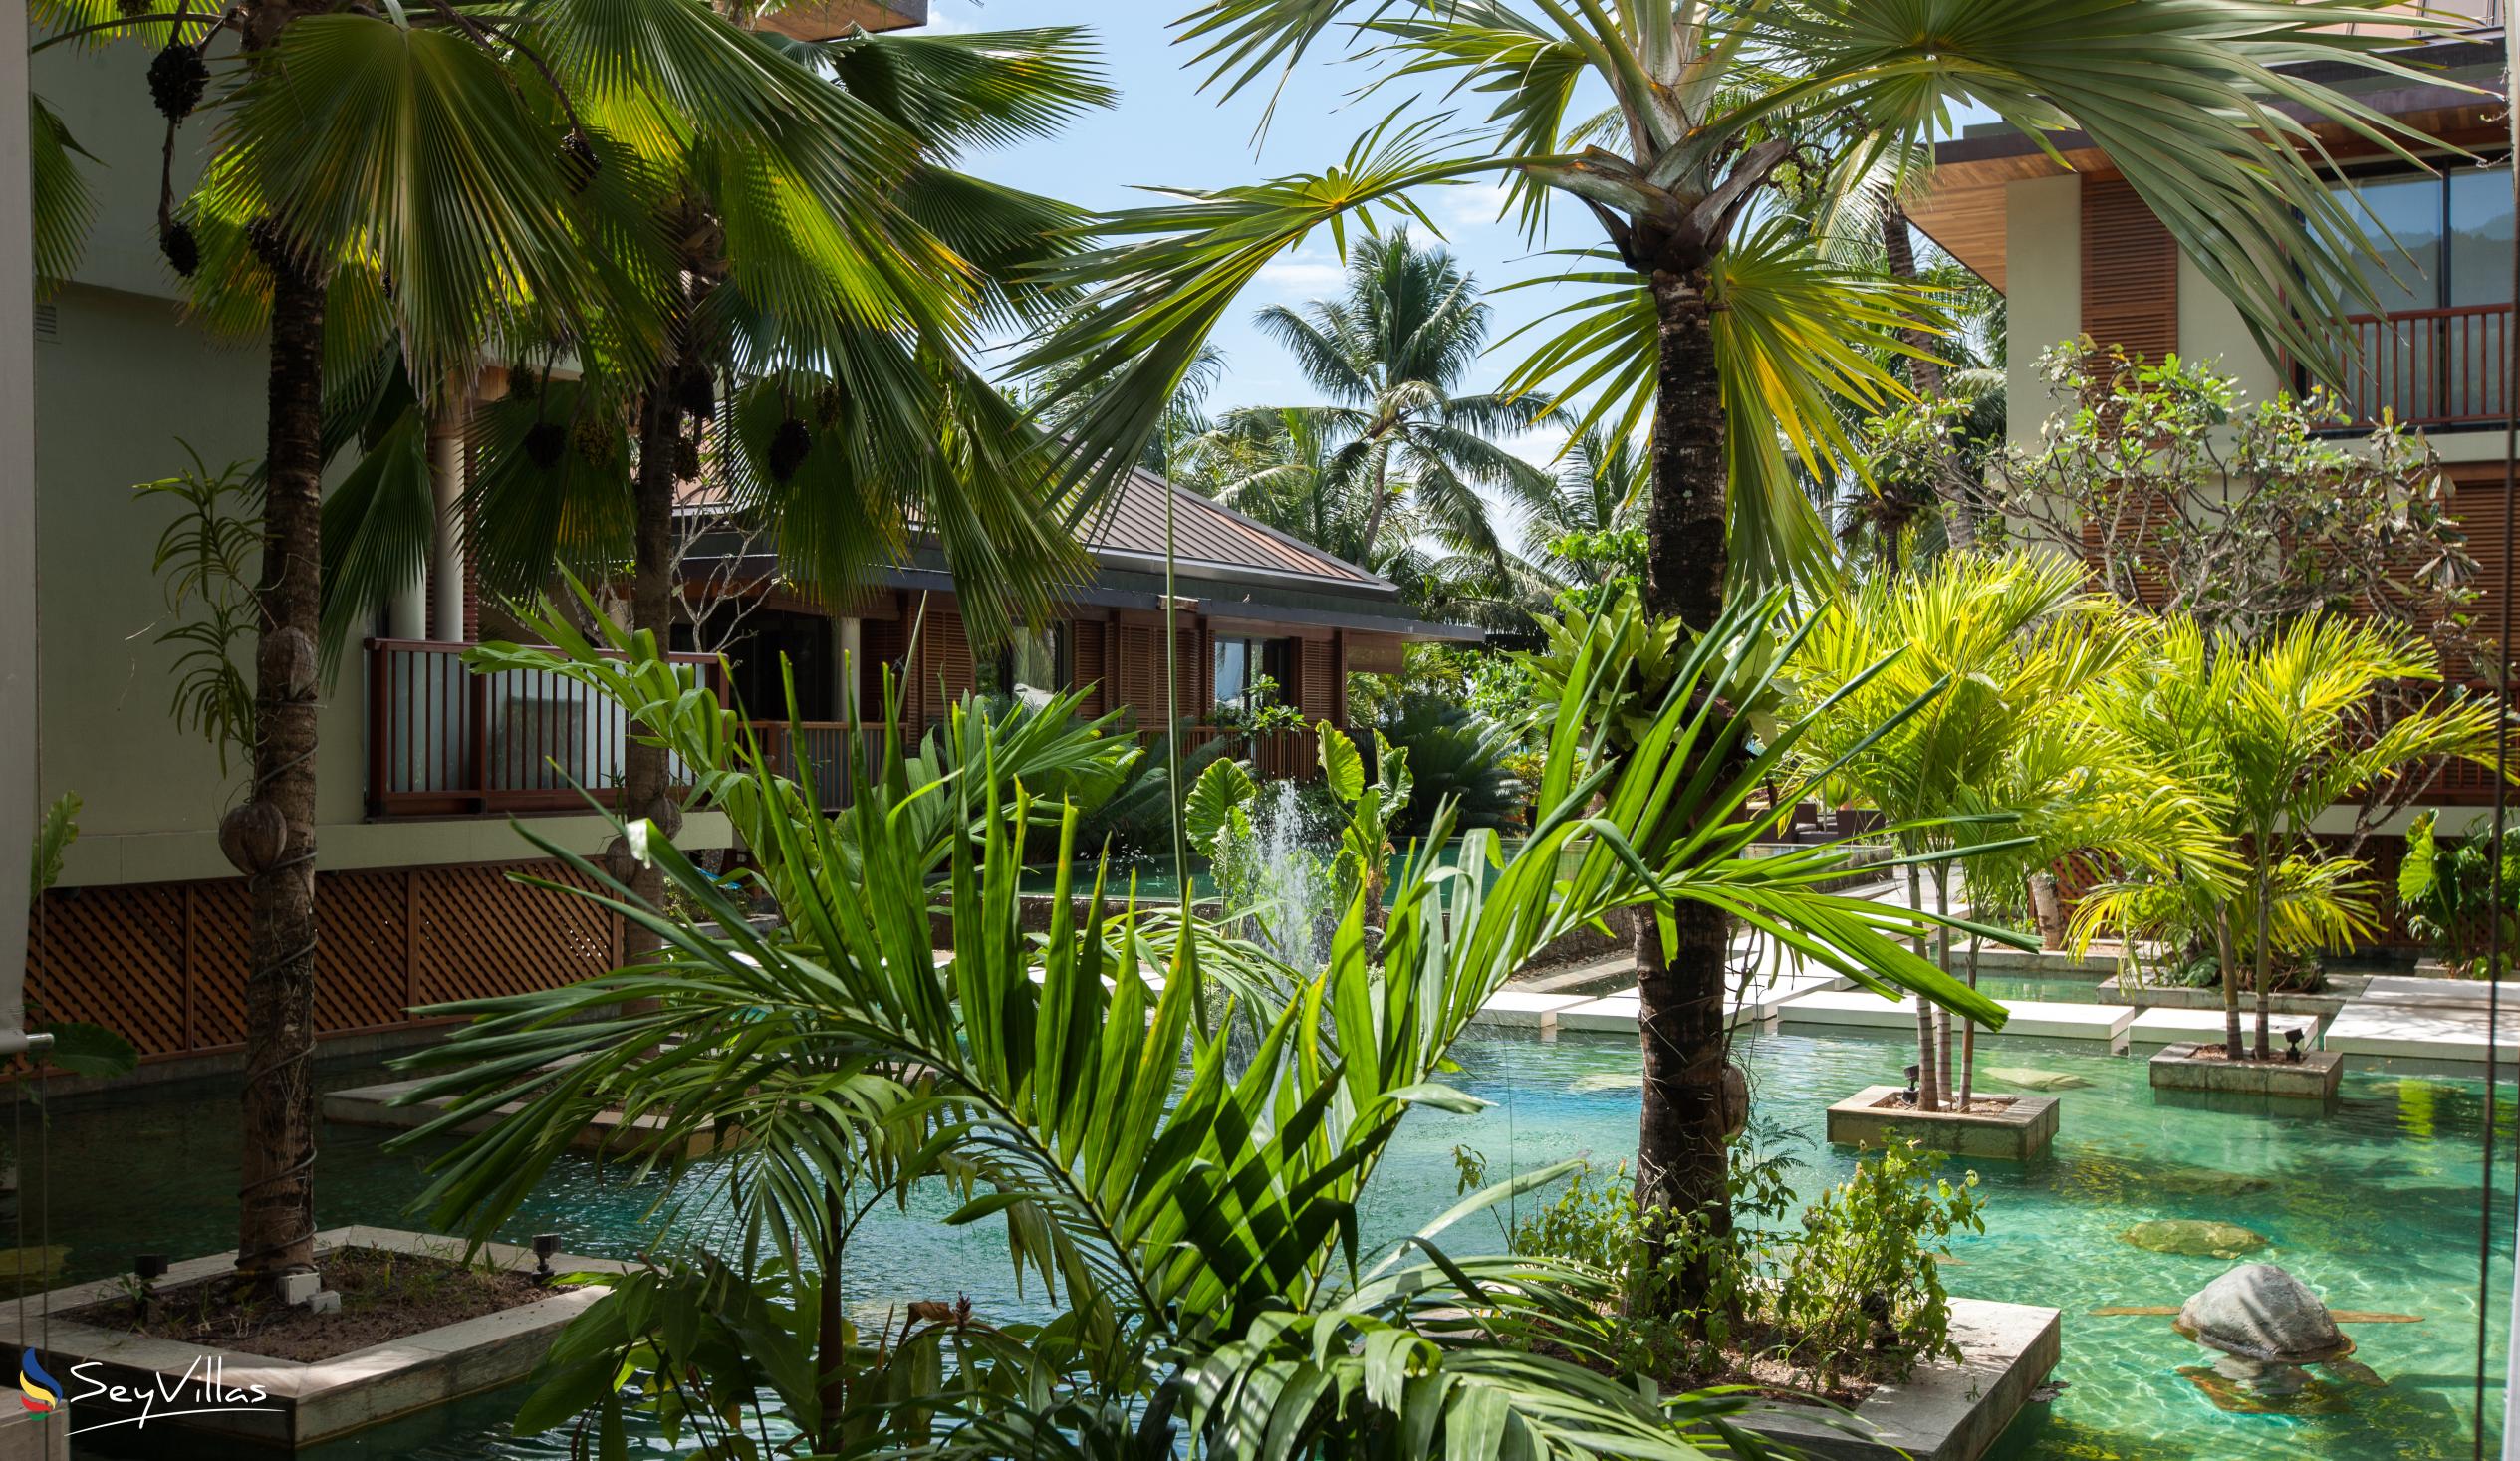 Foto 12: Dhevatara Beach Hotel - Aussenbereich - Praslin (Seychellen)